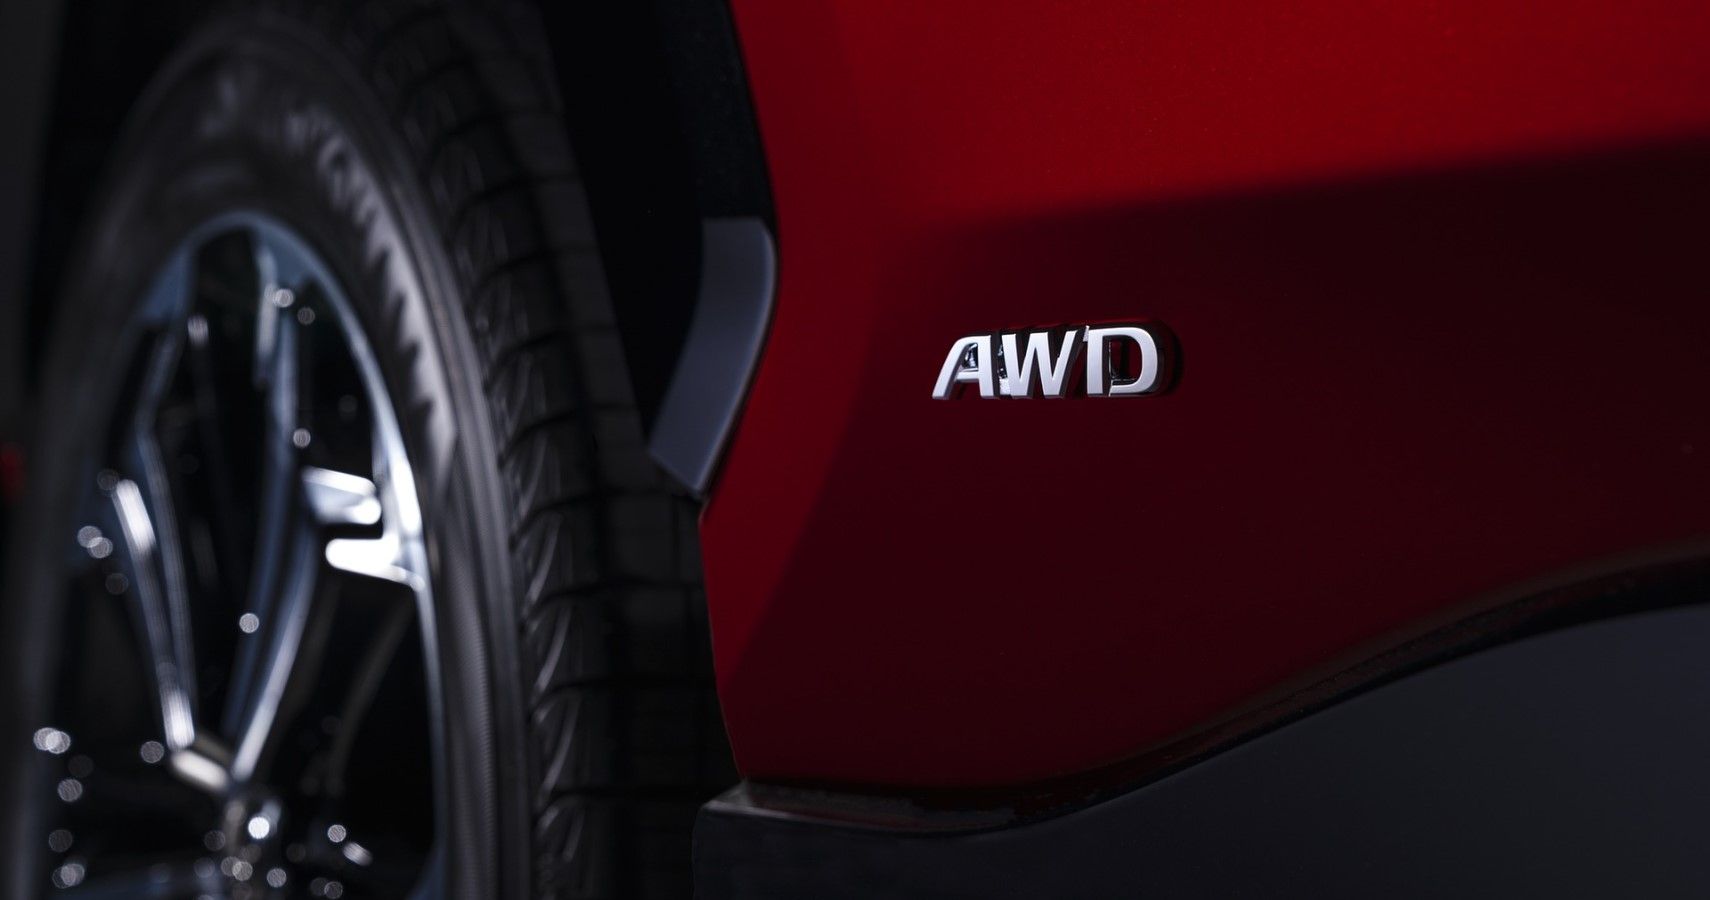 2021 Toyota RAV4 Prime AWD badging